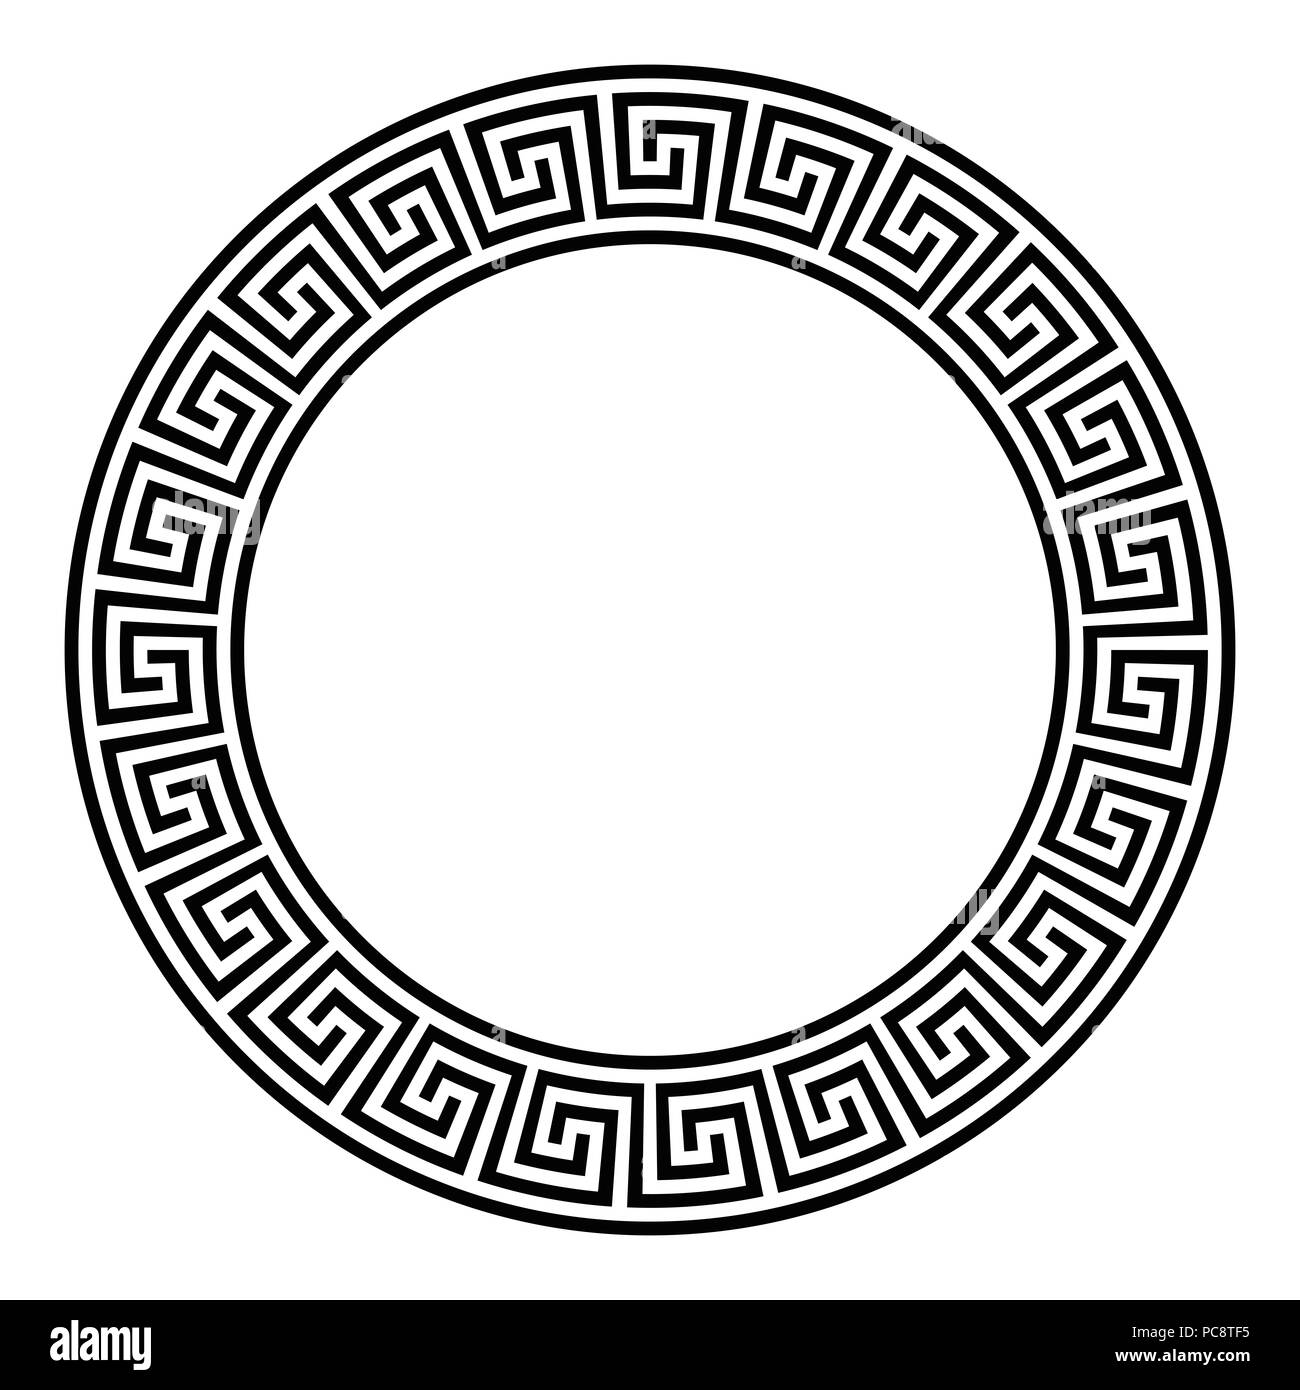 Kreis Rahmen mit nahtlosen getrennt Mäander Muster. Meandros, eine dekorative Grenze, von Linien gebaut, in die ein wiederholtes Motiv geprägt. Stockfoto